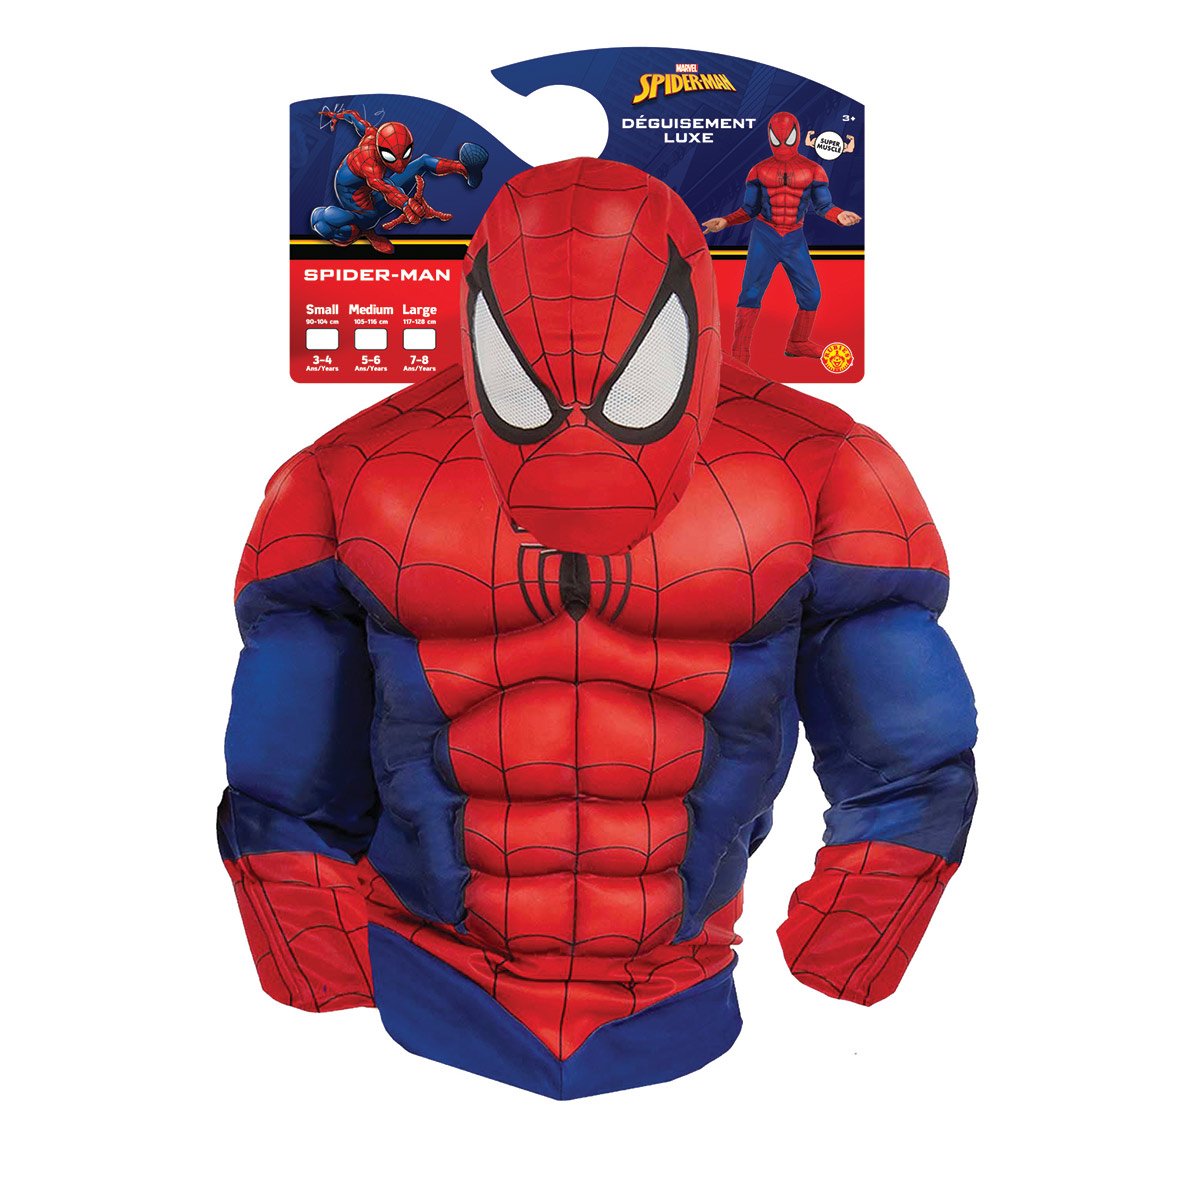 Deguisement Spiderman - Deguisement Adulte Homme Le Deguisement.com